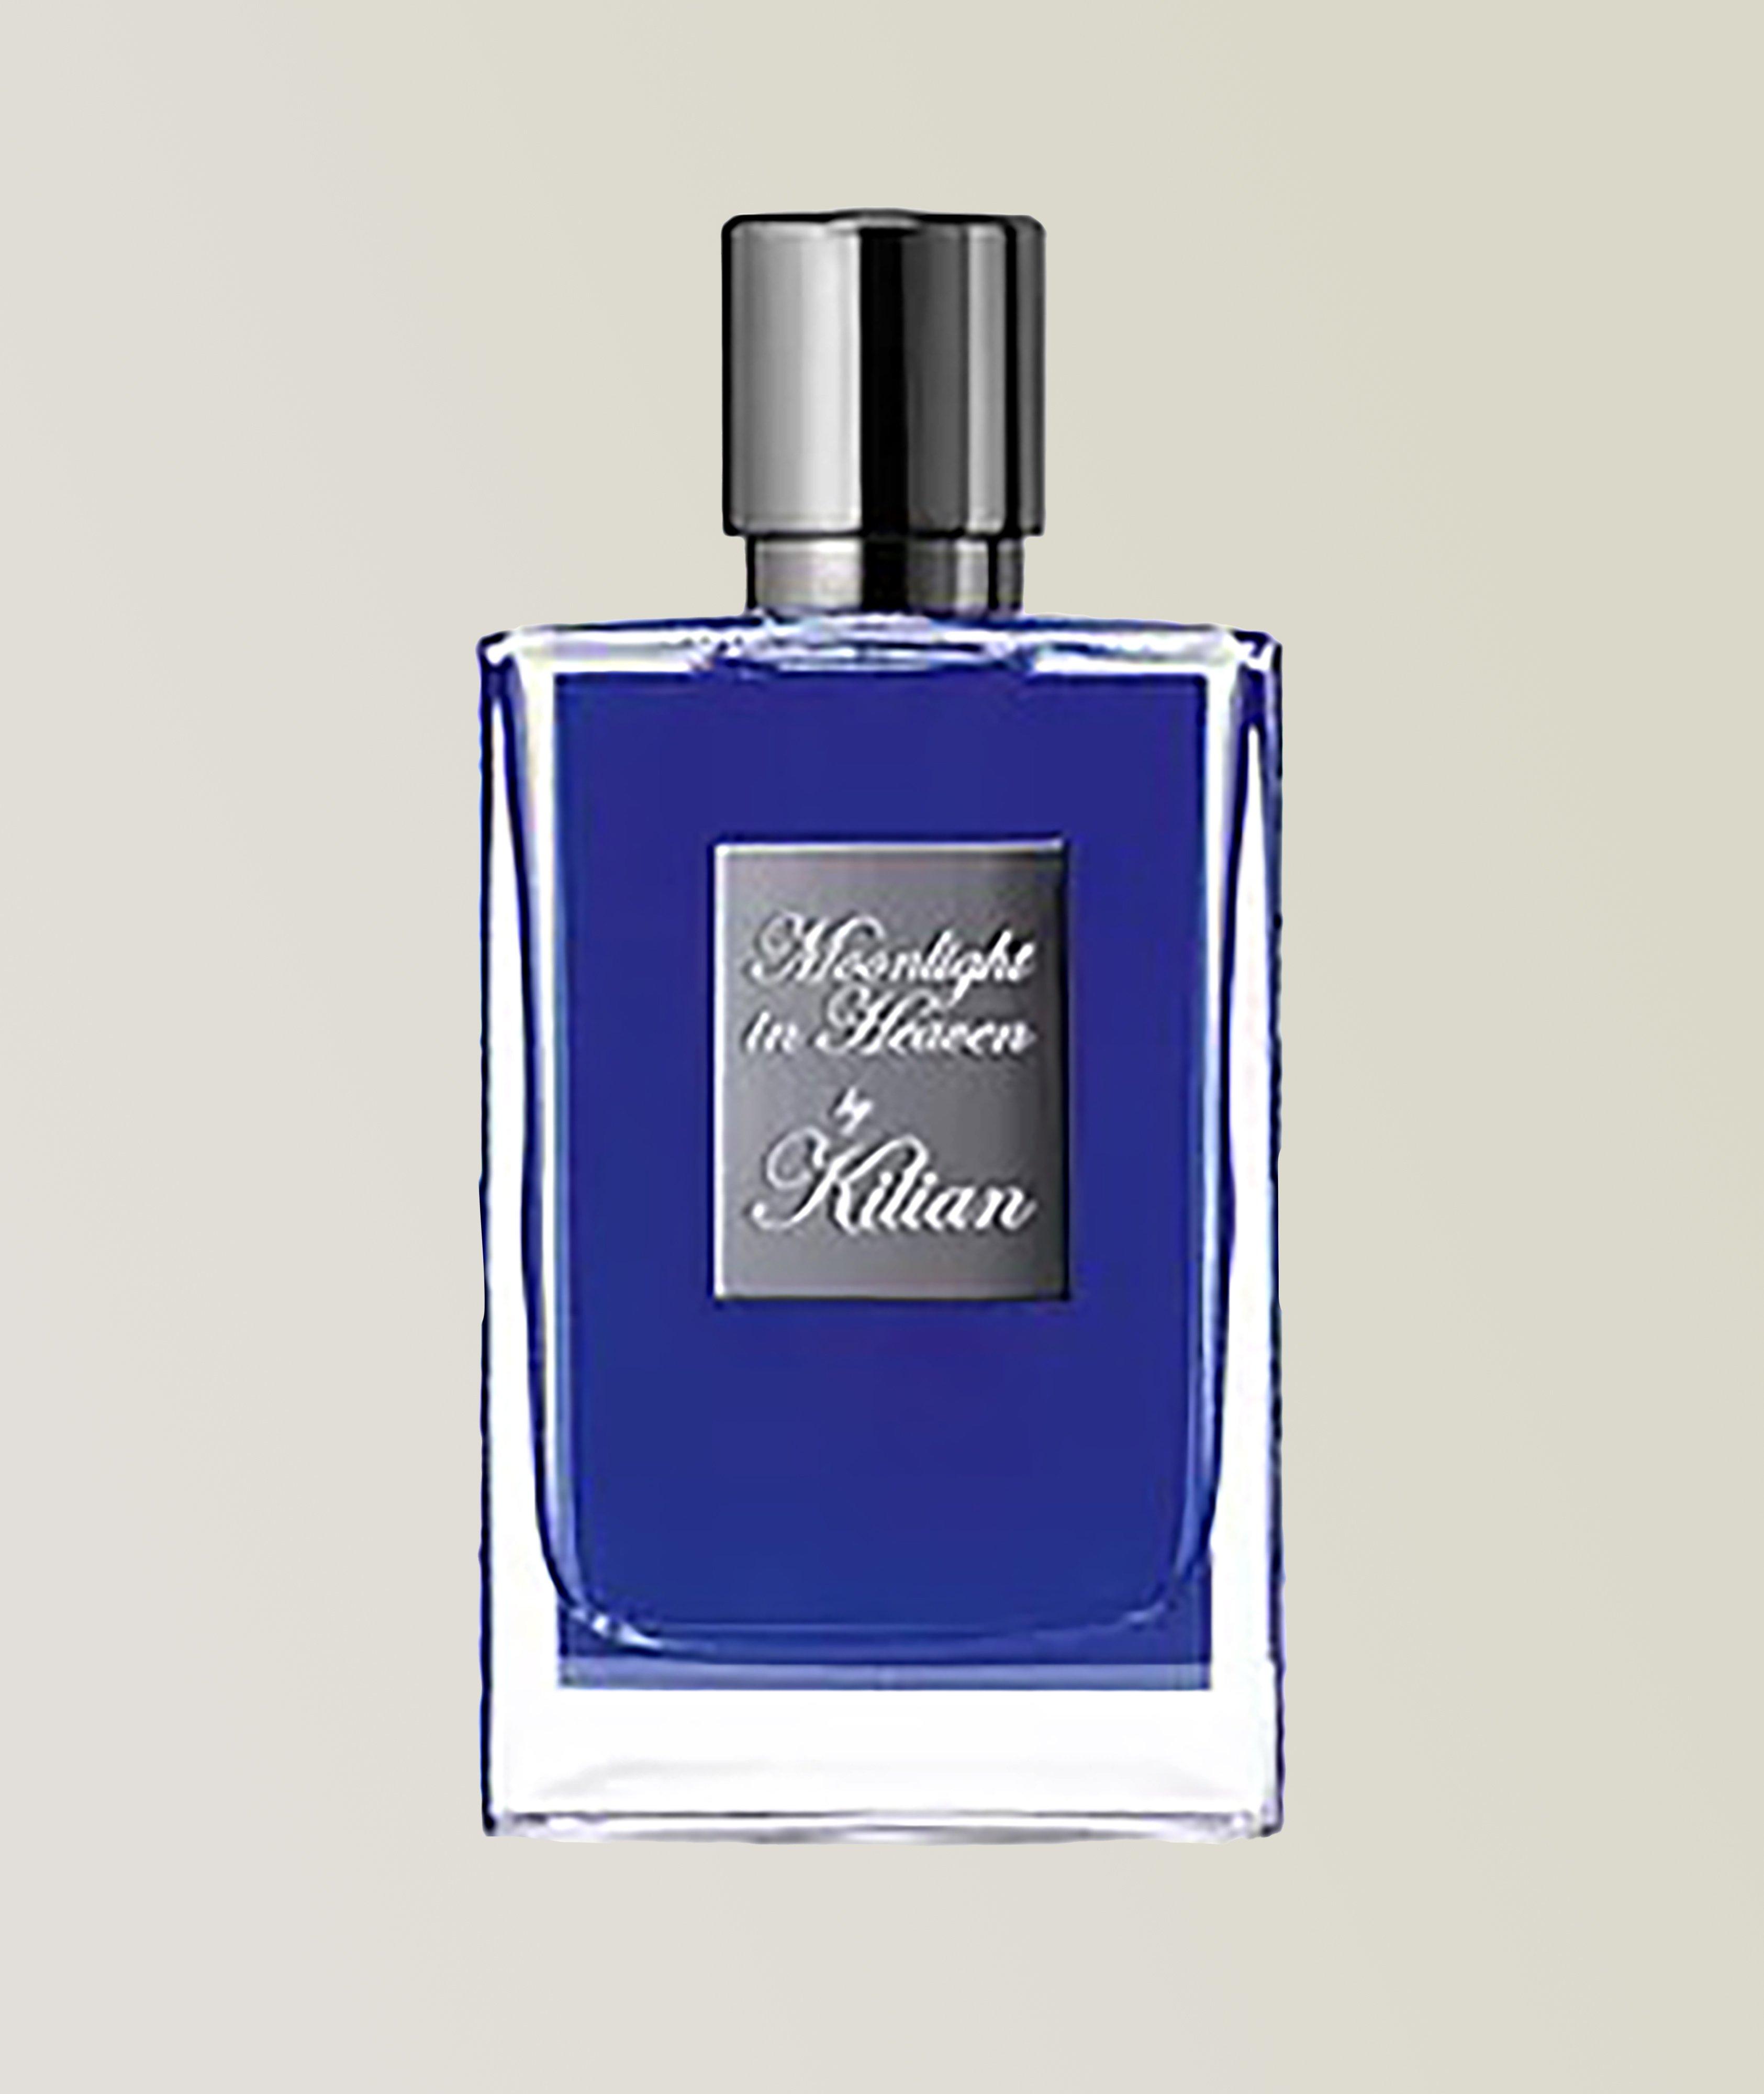 Kilian Eau de parfum Moonlight in Heaven (50 ml)